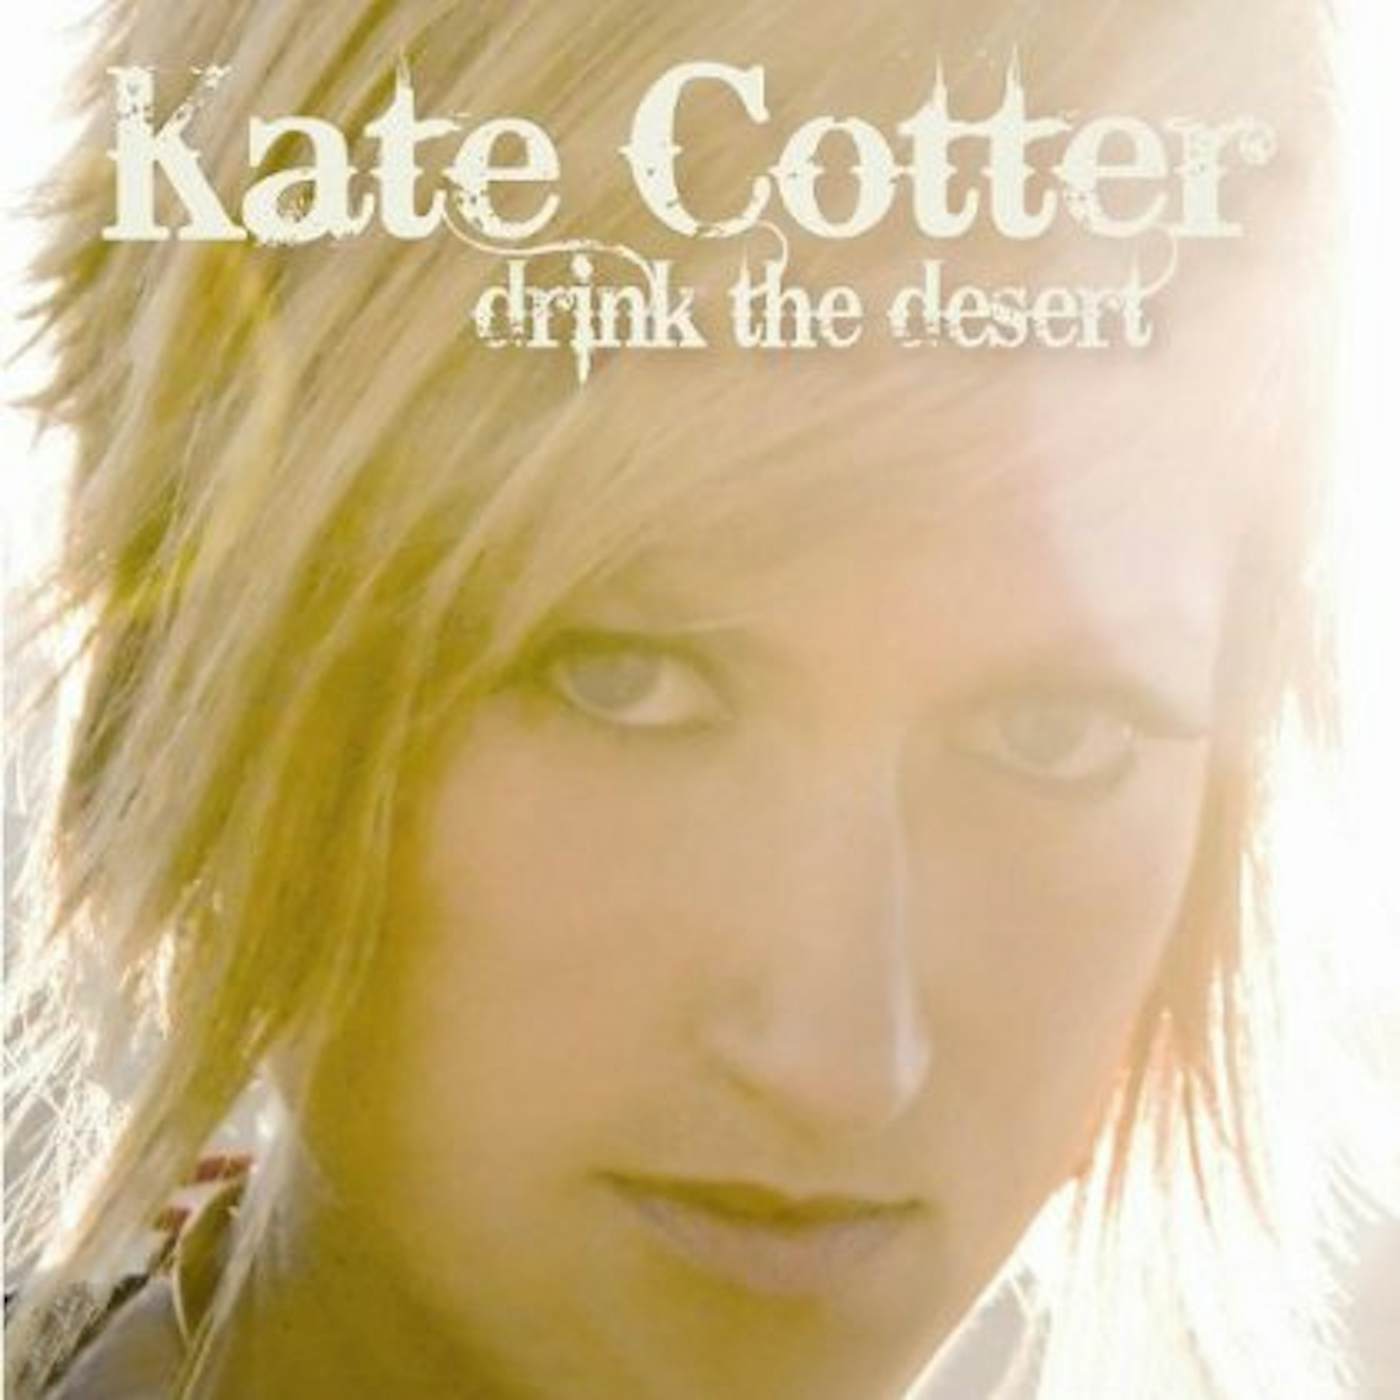 Kate Cotter DRINK THE DESERT CD